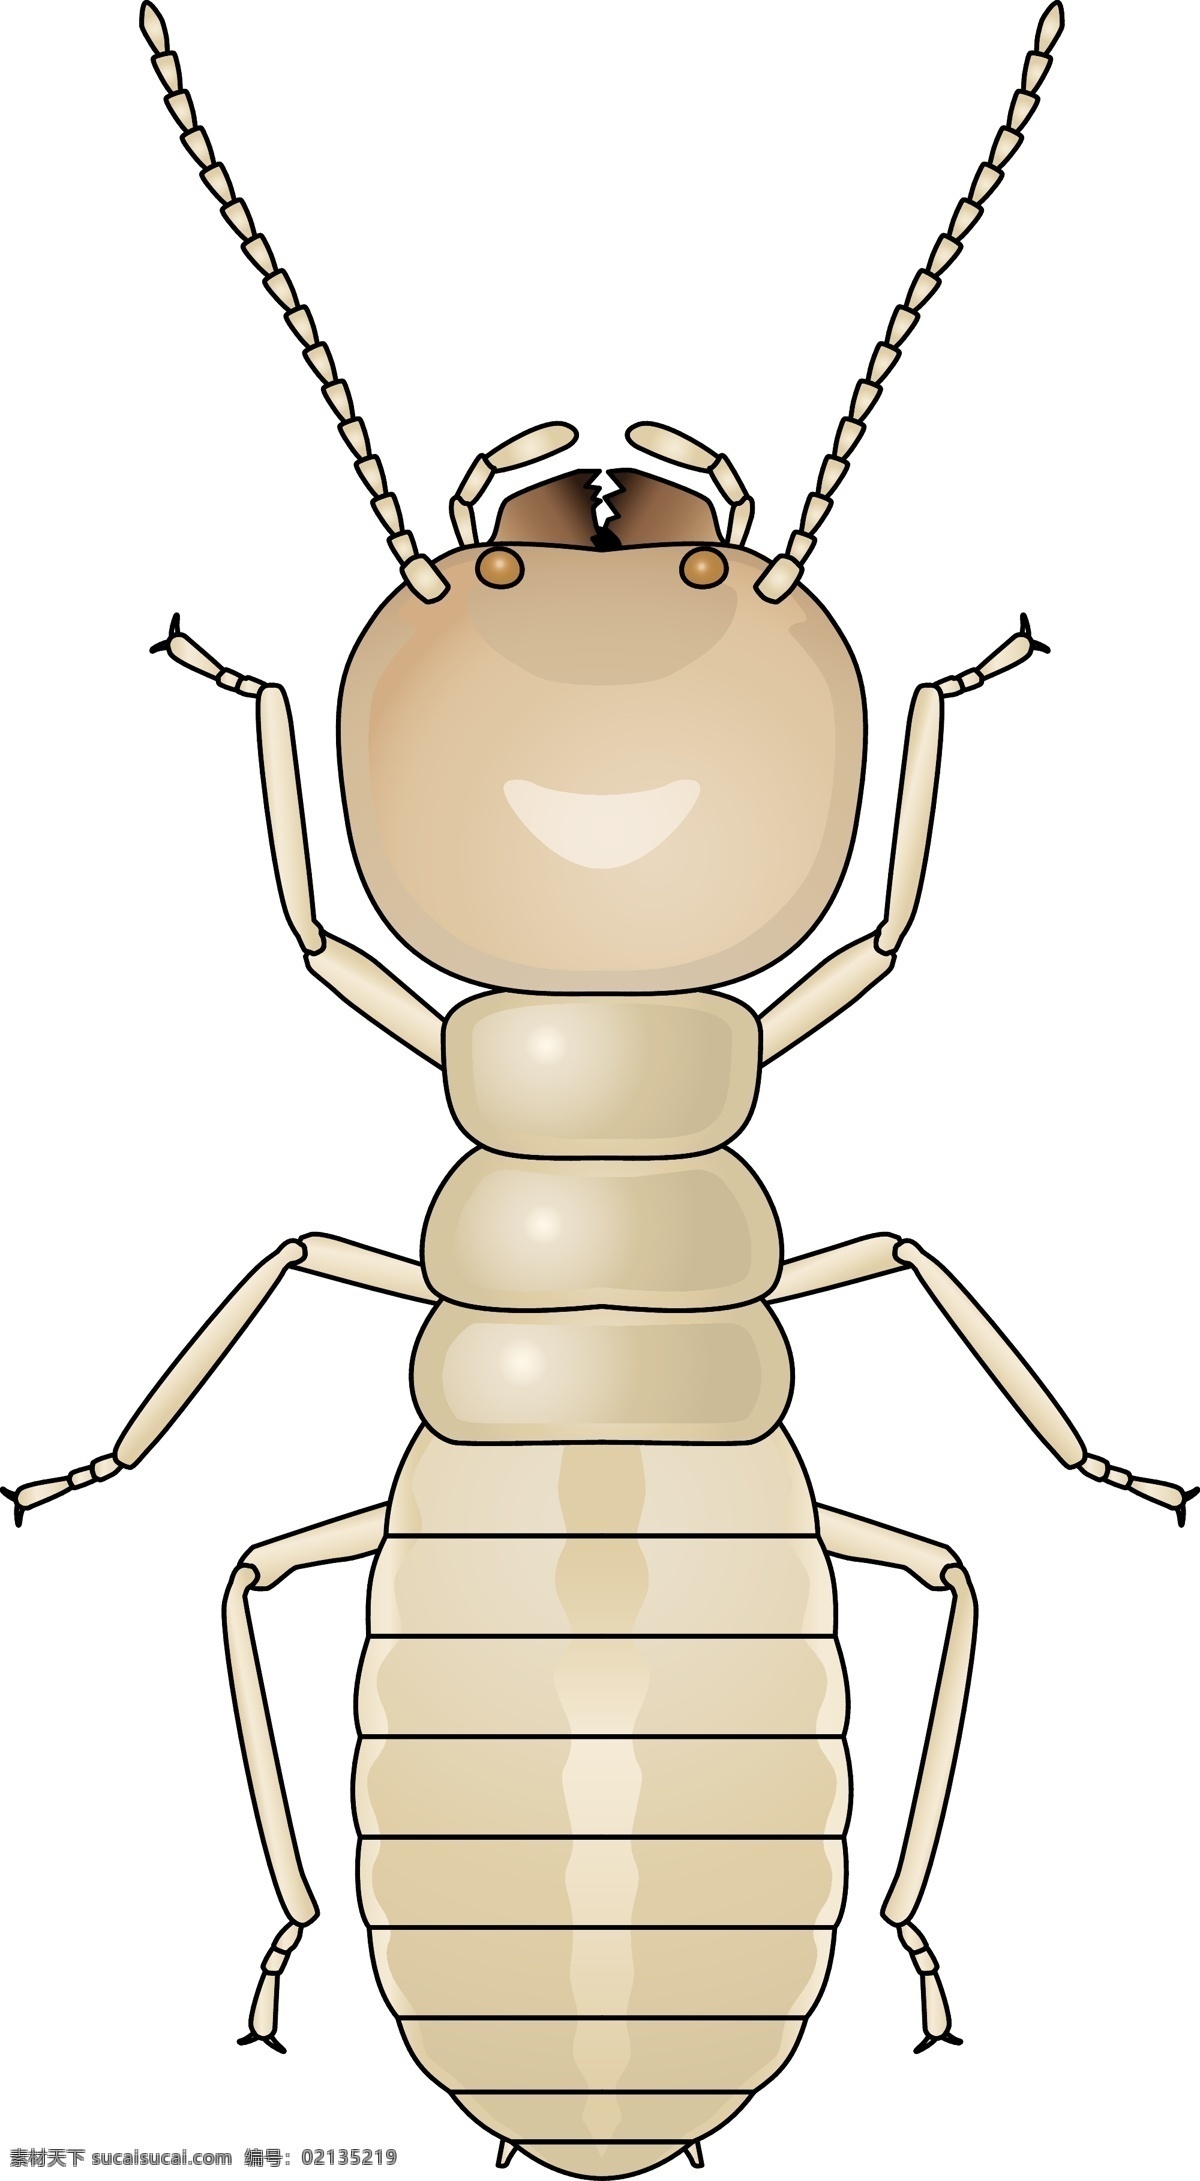 昆虫系列 白蚁 矢量图 昆虫 昆虫纲 动物界 节肢动物 insect 大自然 剪影 户外 野外 虫尉 大水蚁 矢量 动物 昆虫类 生物世界